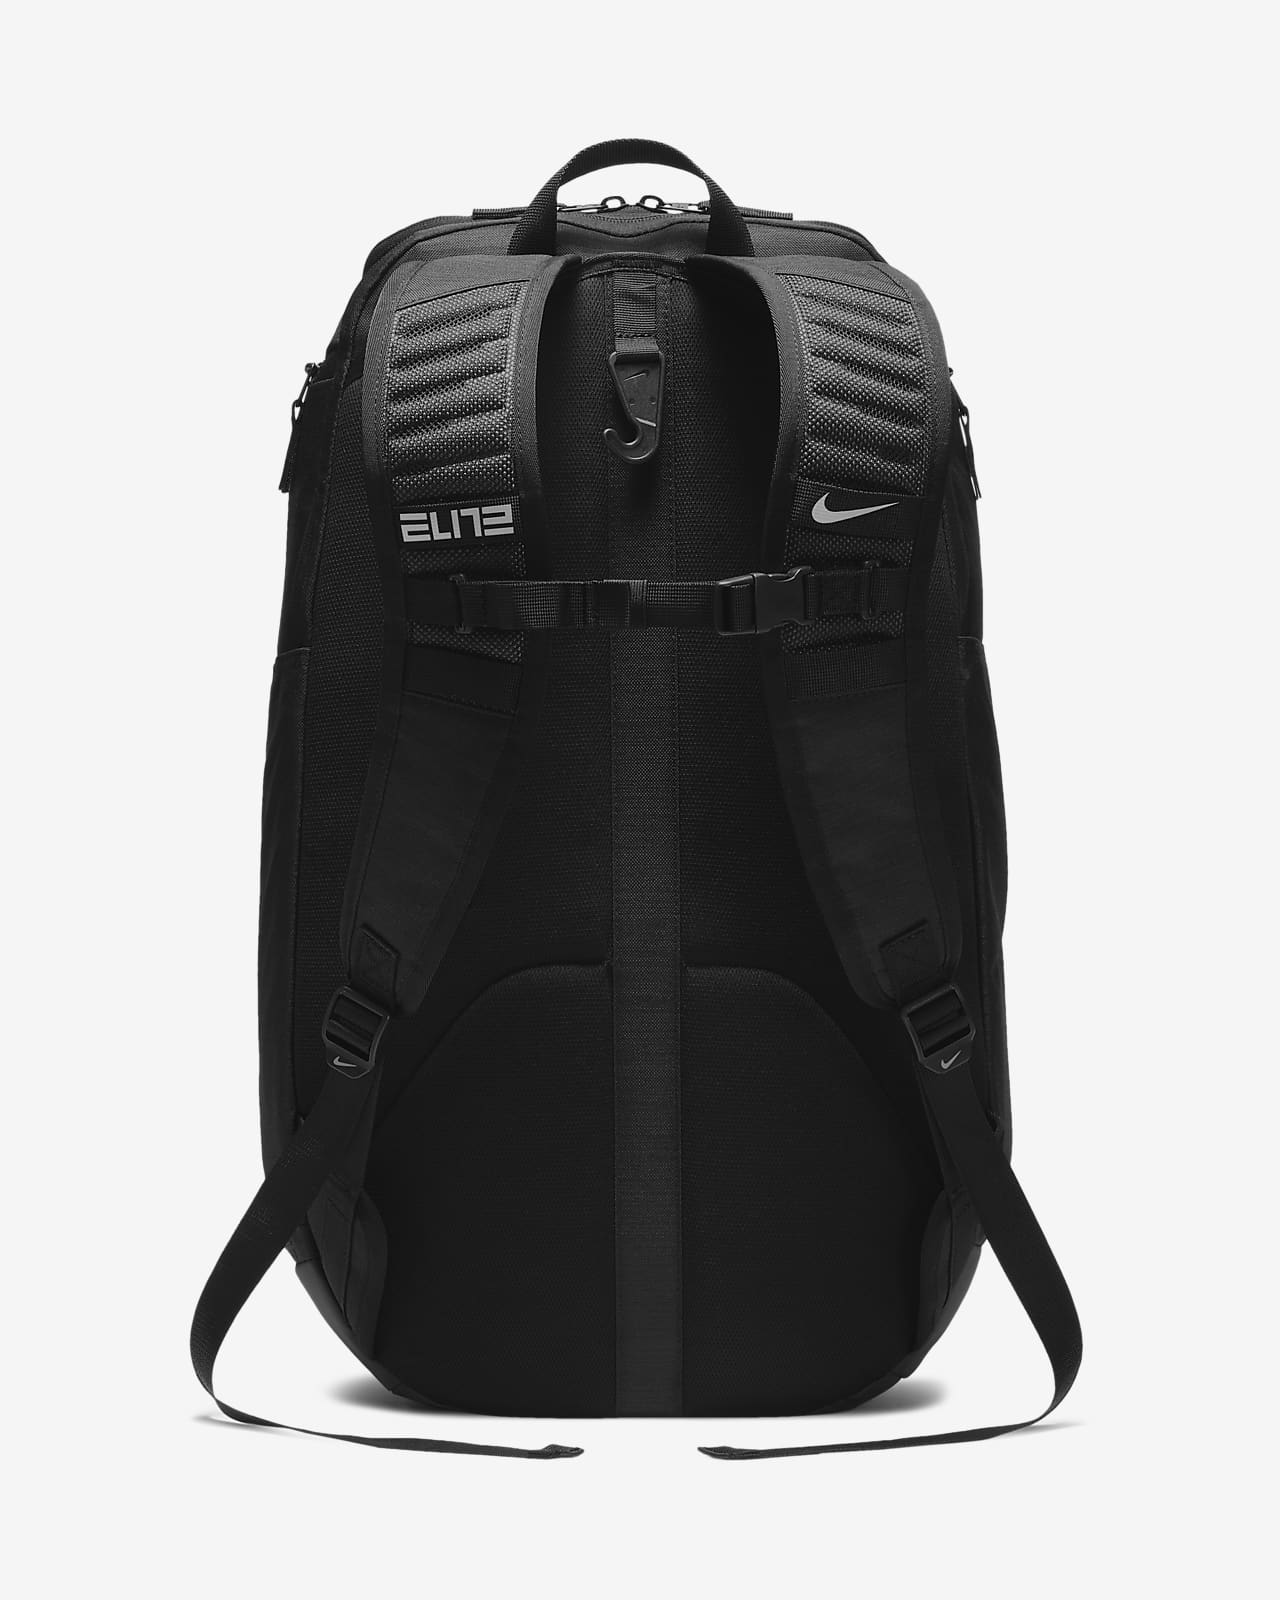 nike elite backpack old version